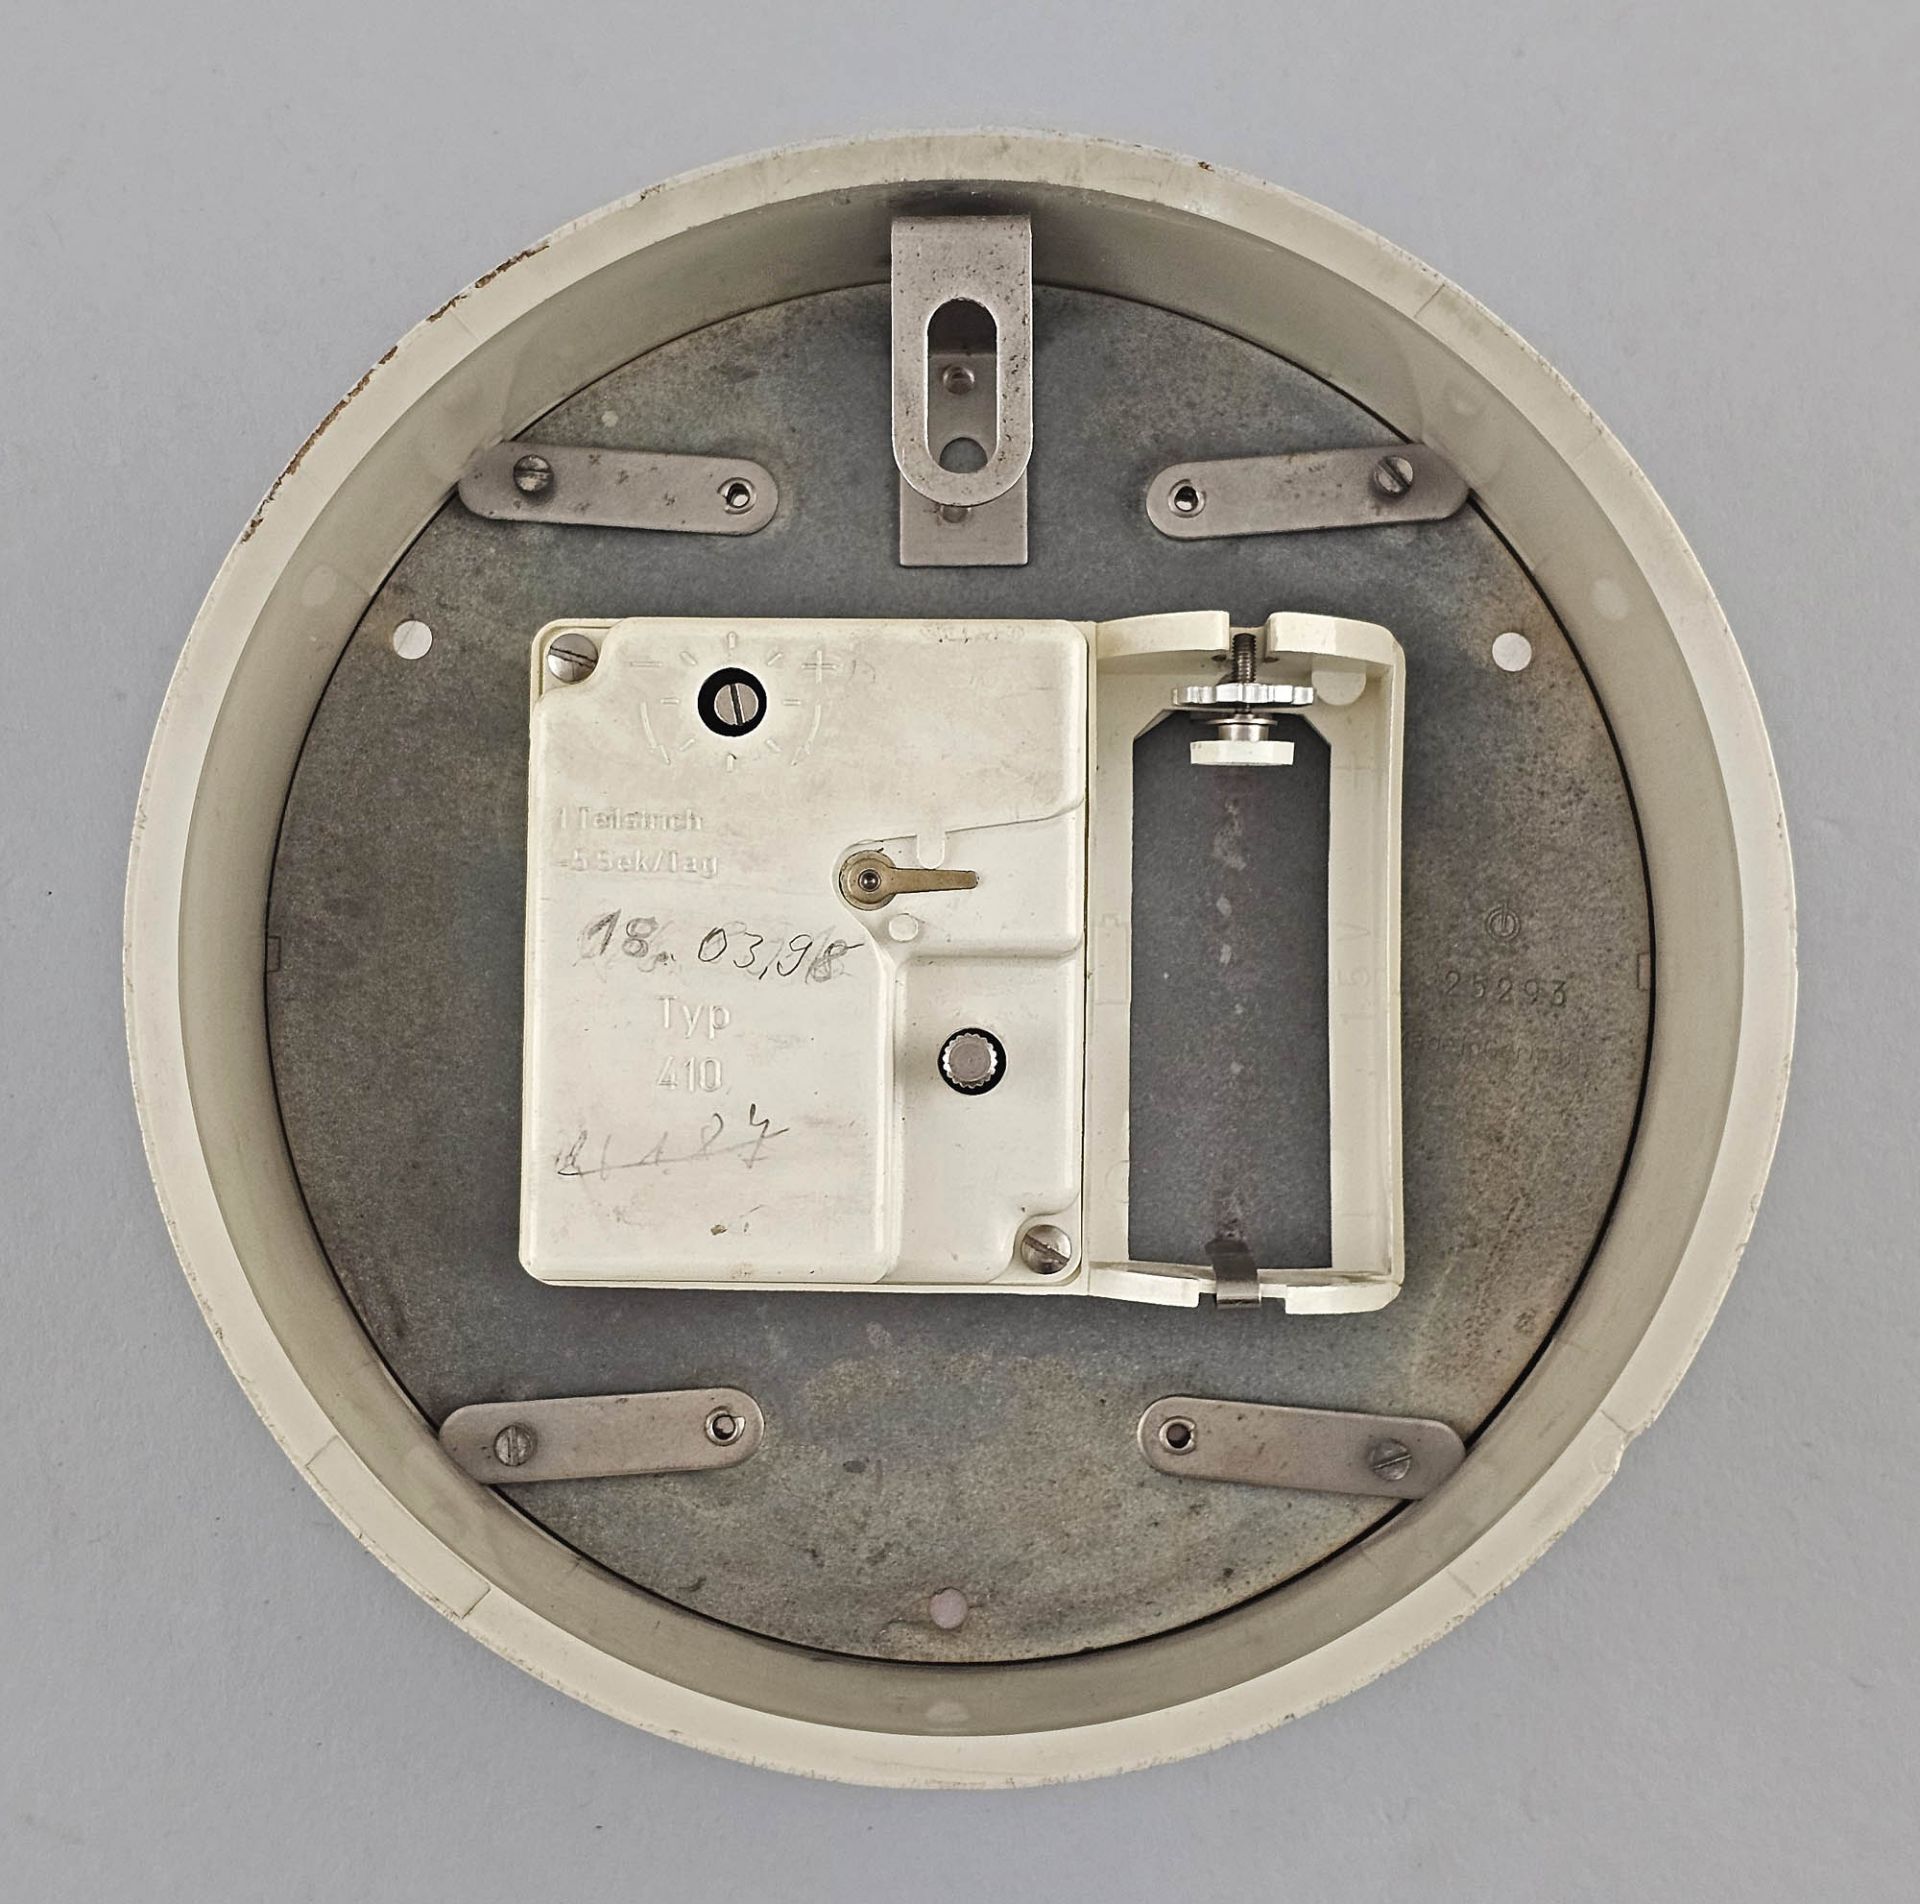 Elektrische Wanduhr Glashütte elektrochron Typ 410 - Bild 2 aus 3